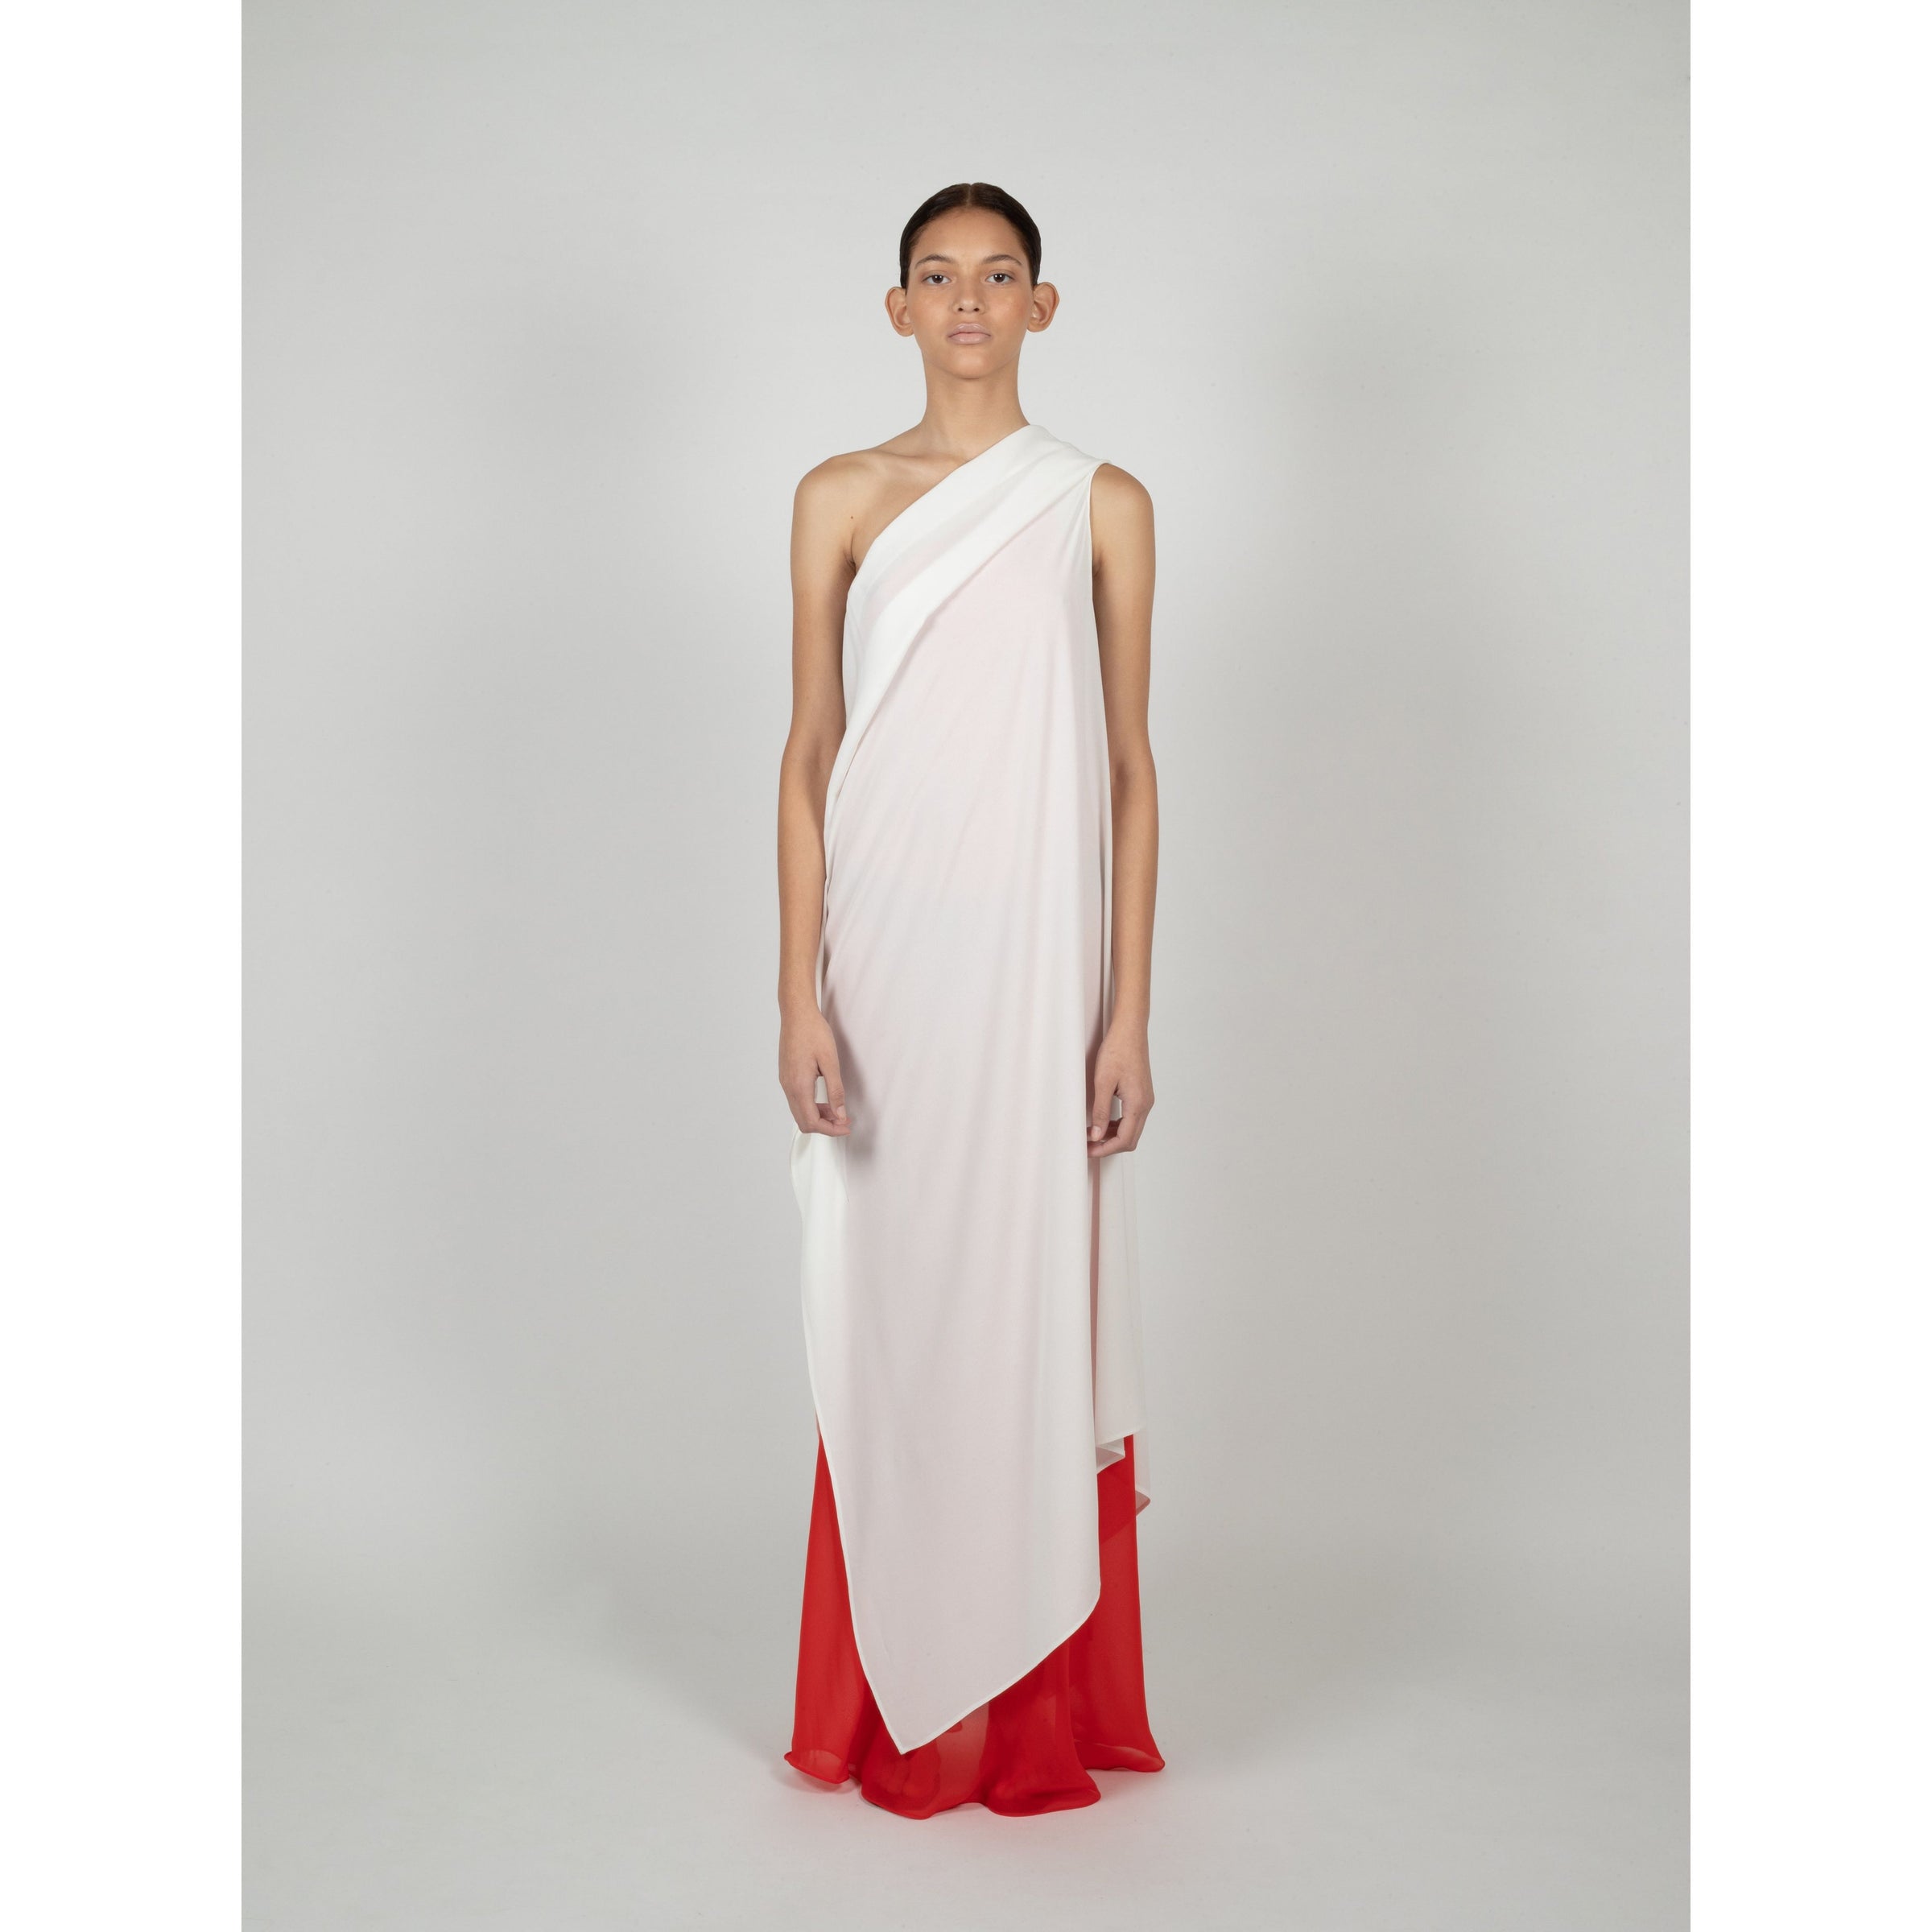 Greek_Dress